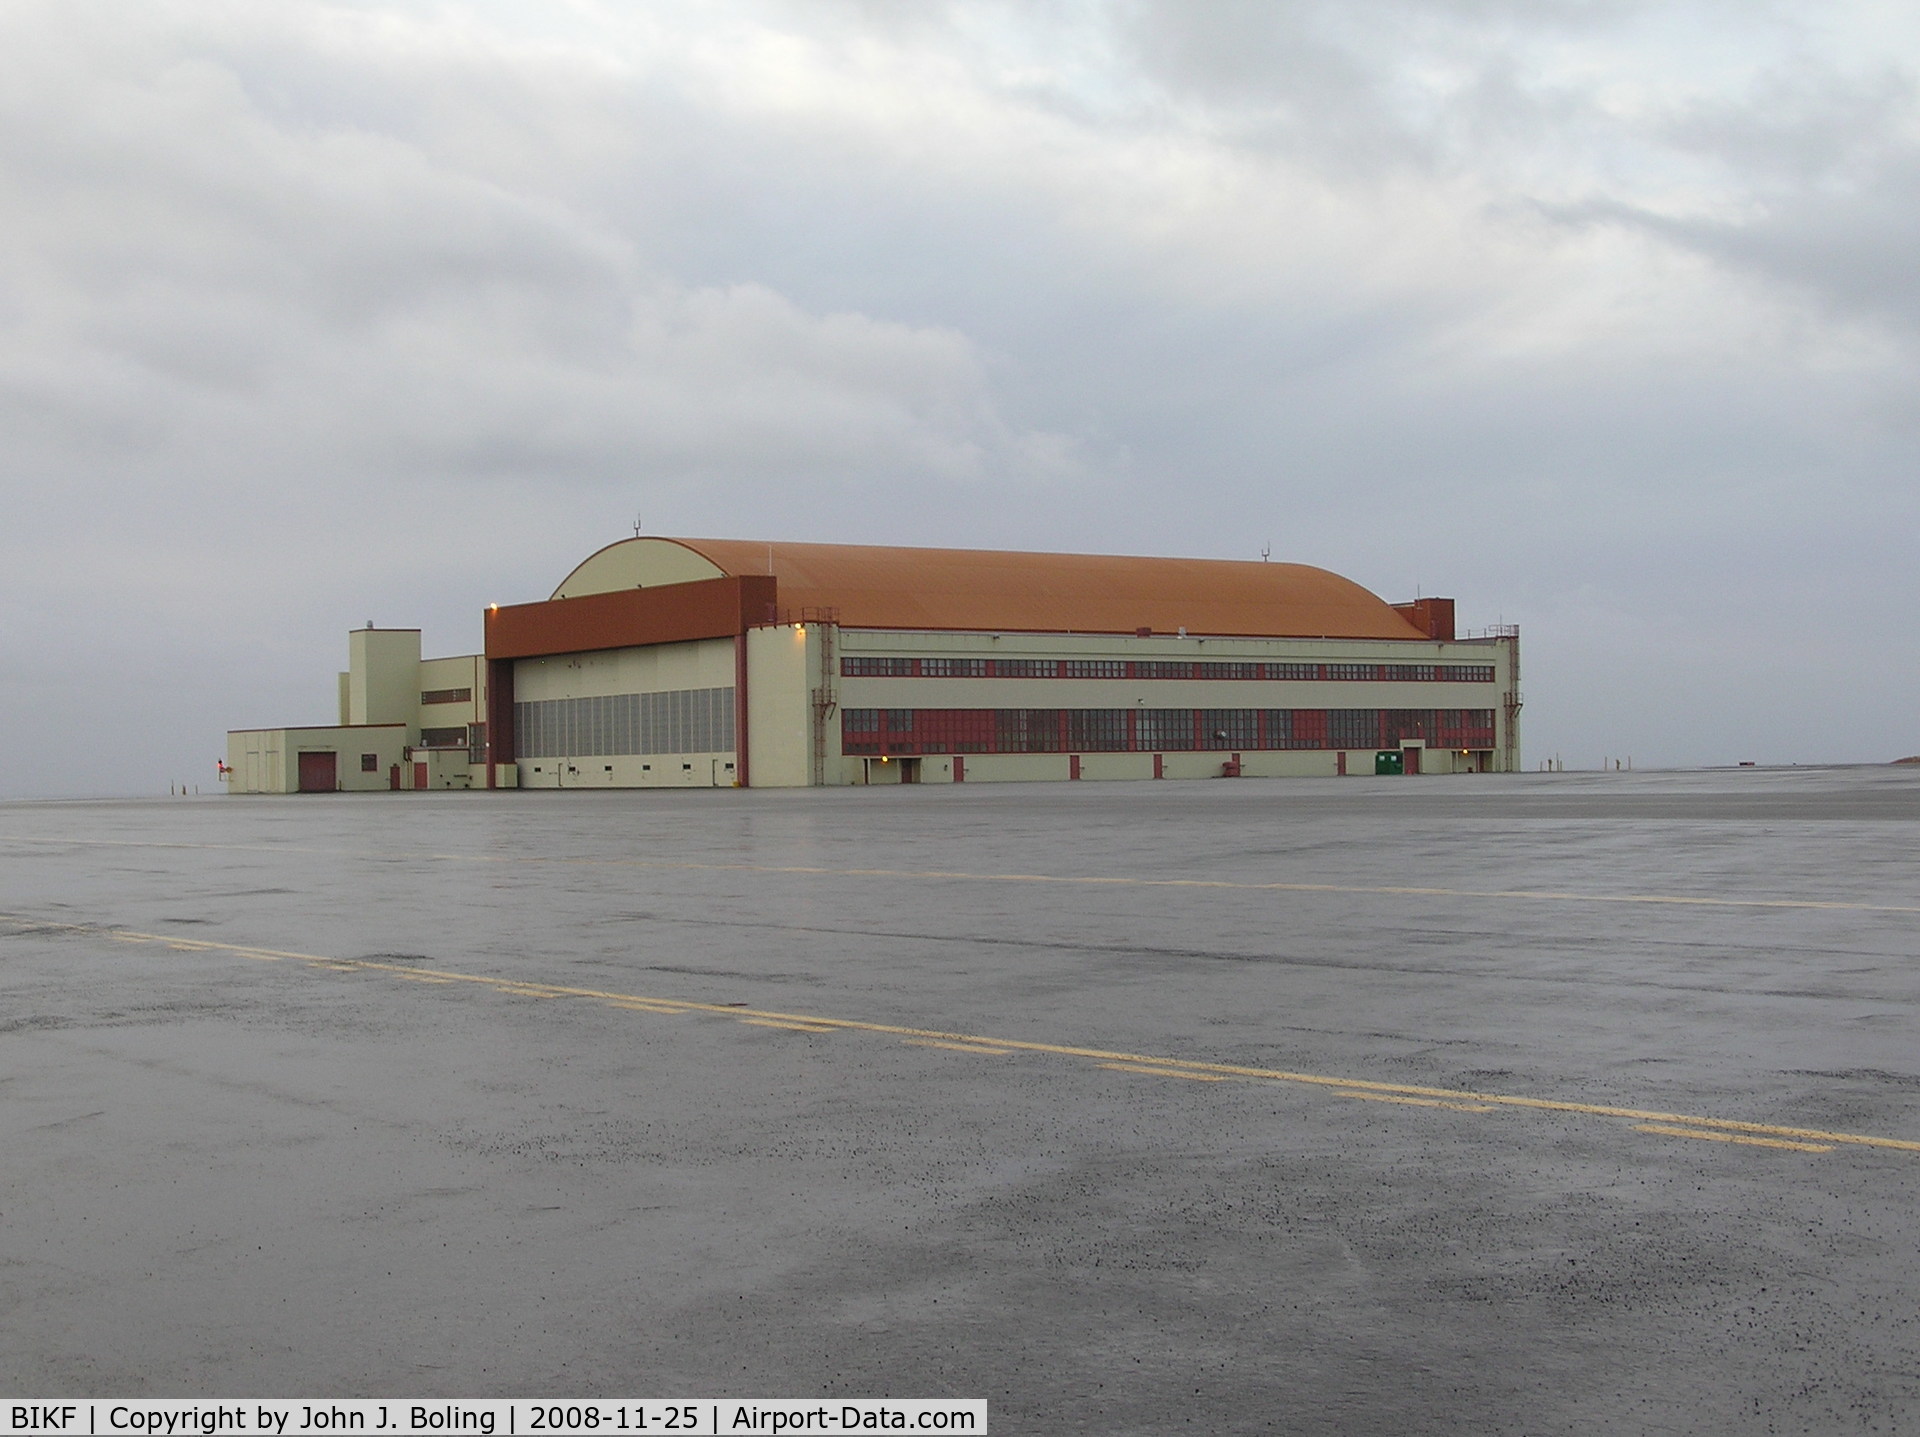 Keflavík International Airport (Flugstöð Leifs Eiríkssonar), Keflavík Iceland (BIKF) - Former US Navy hangar refurbished.Now FBO